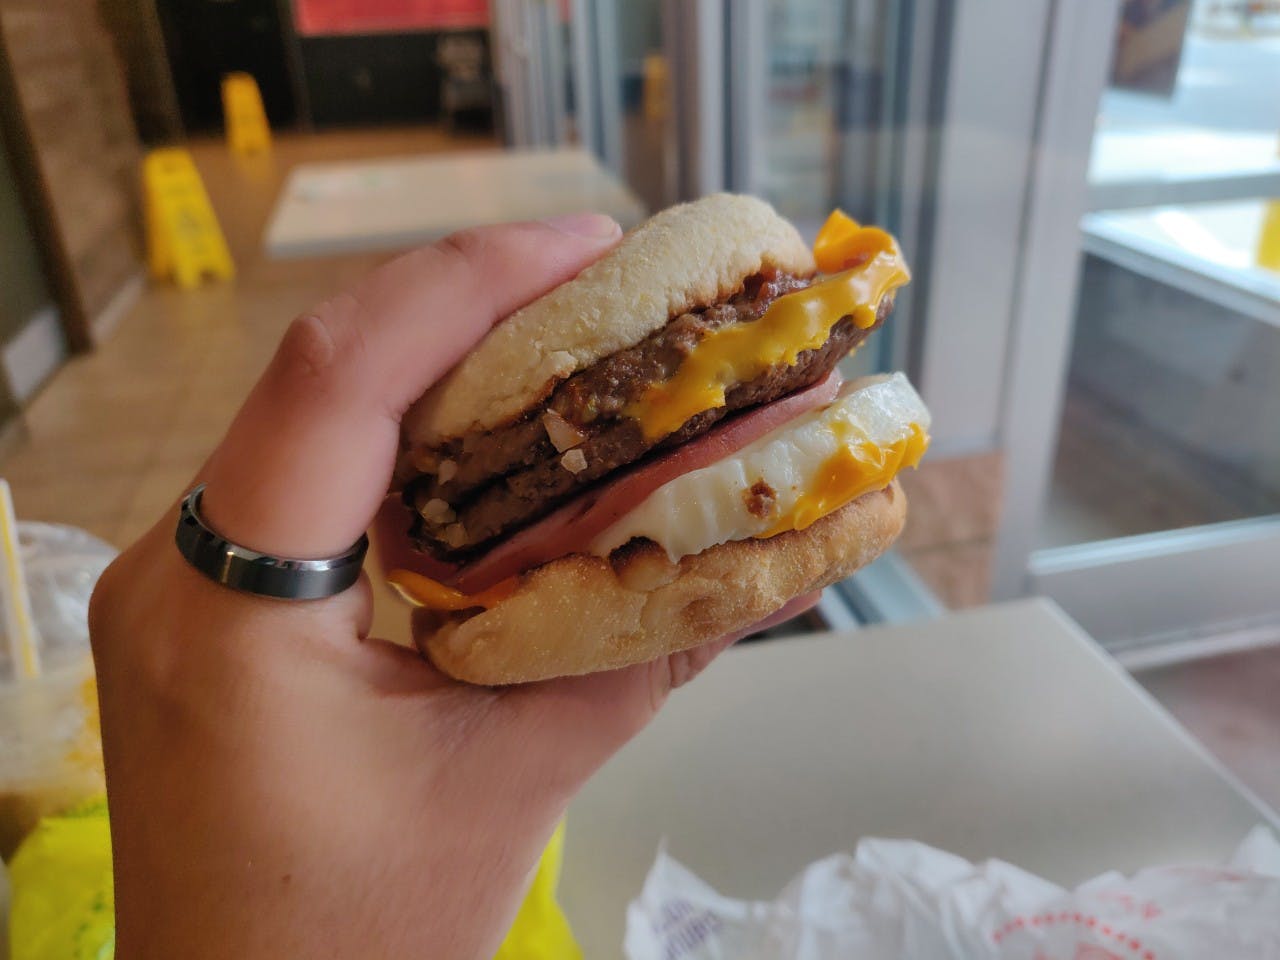 mcdonalds secret menu mc10:35 burger